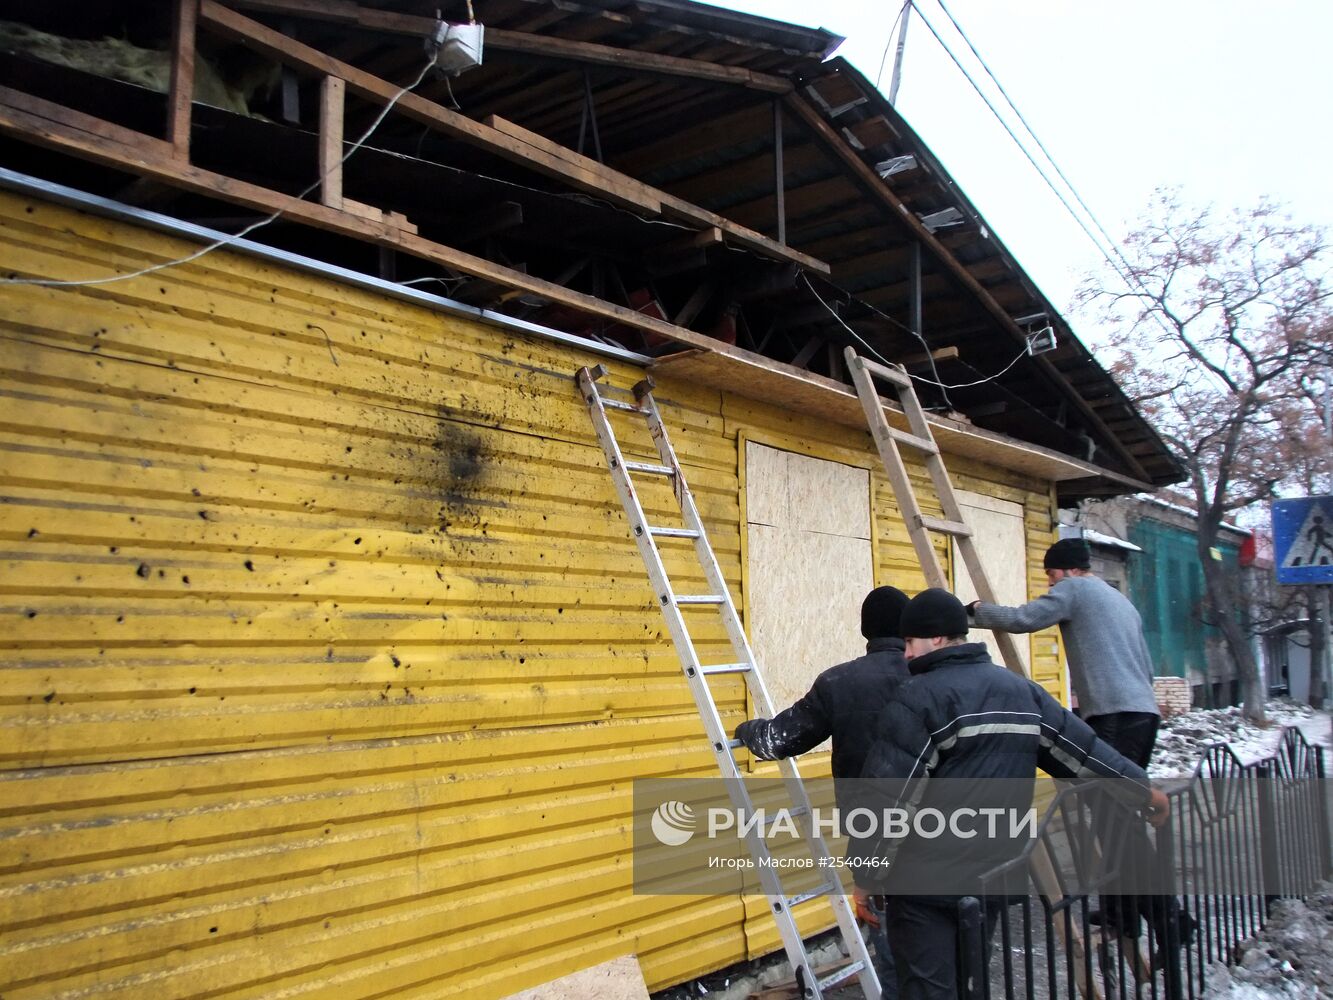 Последствия обстрела украинскими силовиками Донецка